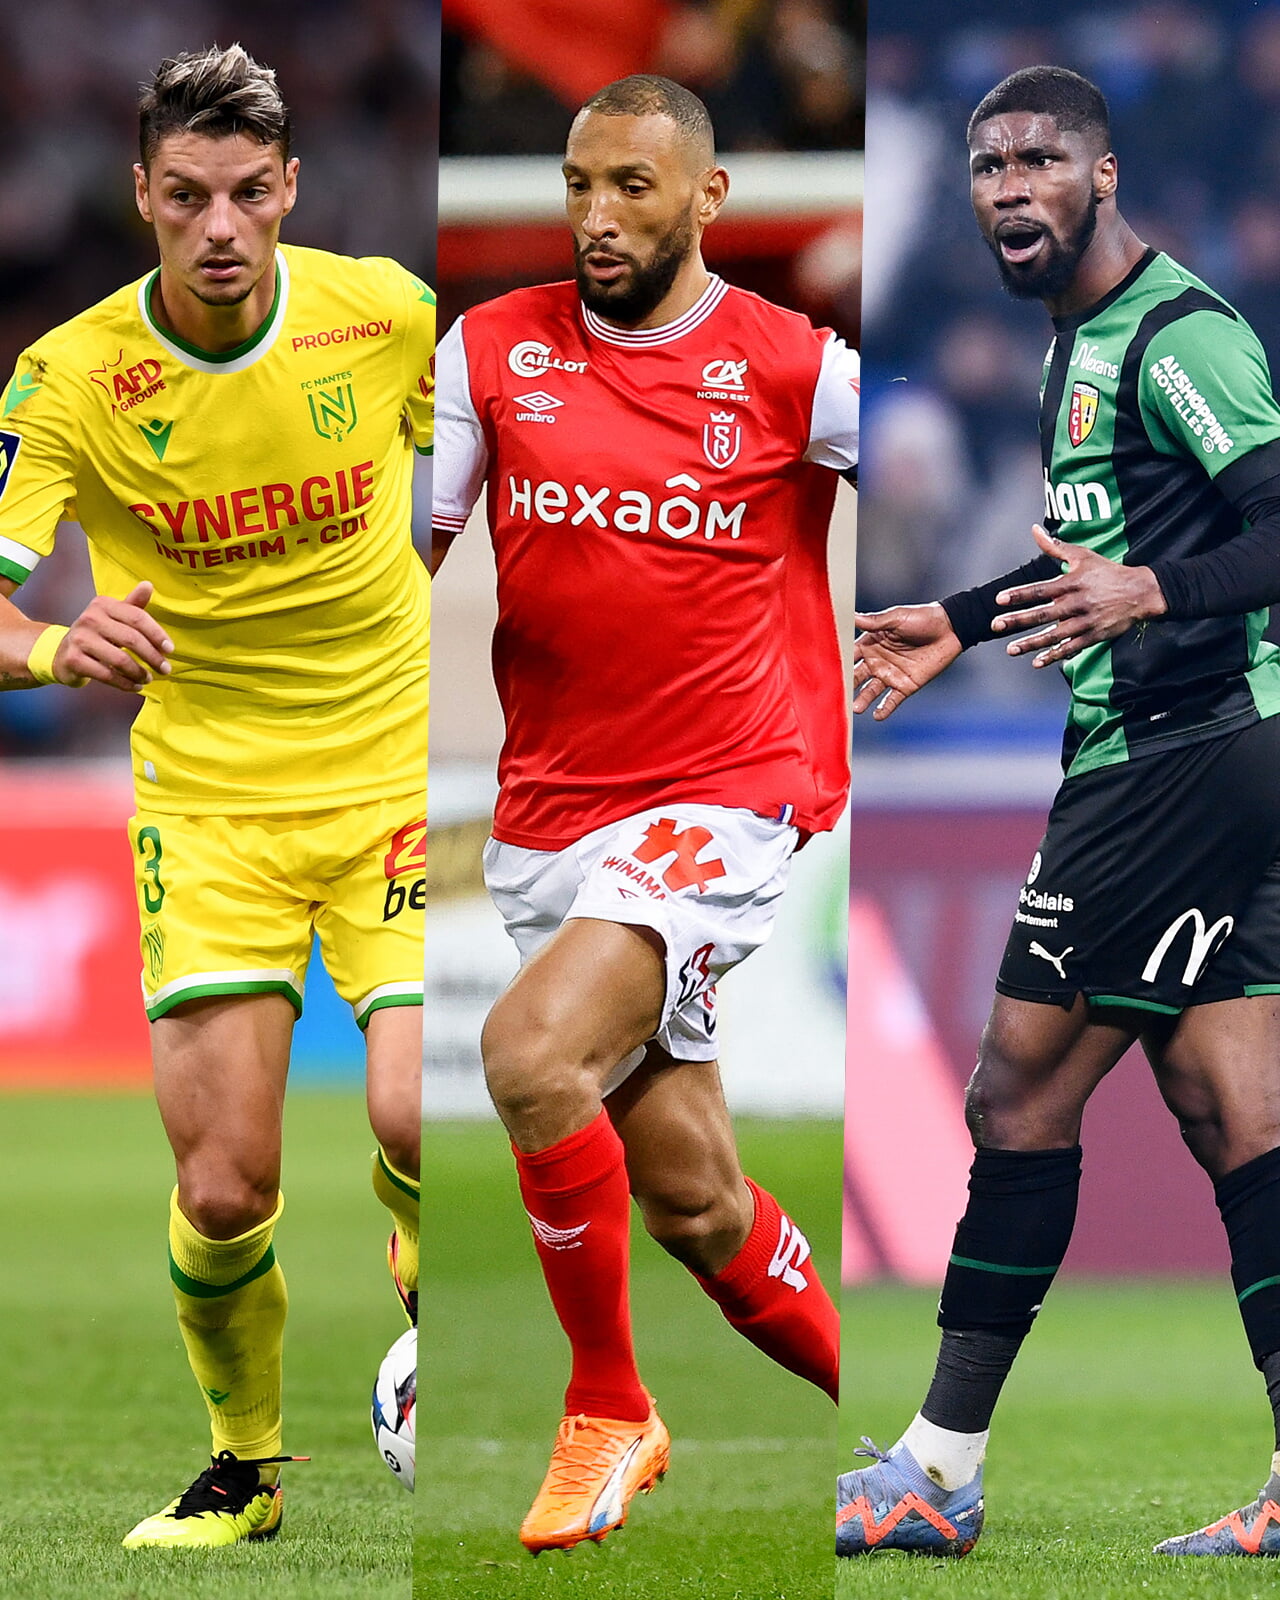 Girotto (FC Nantes), Abdelhamid (Stade de Reims) et Danso (RC Lens) brillent cette saison.